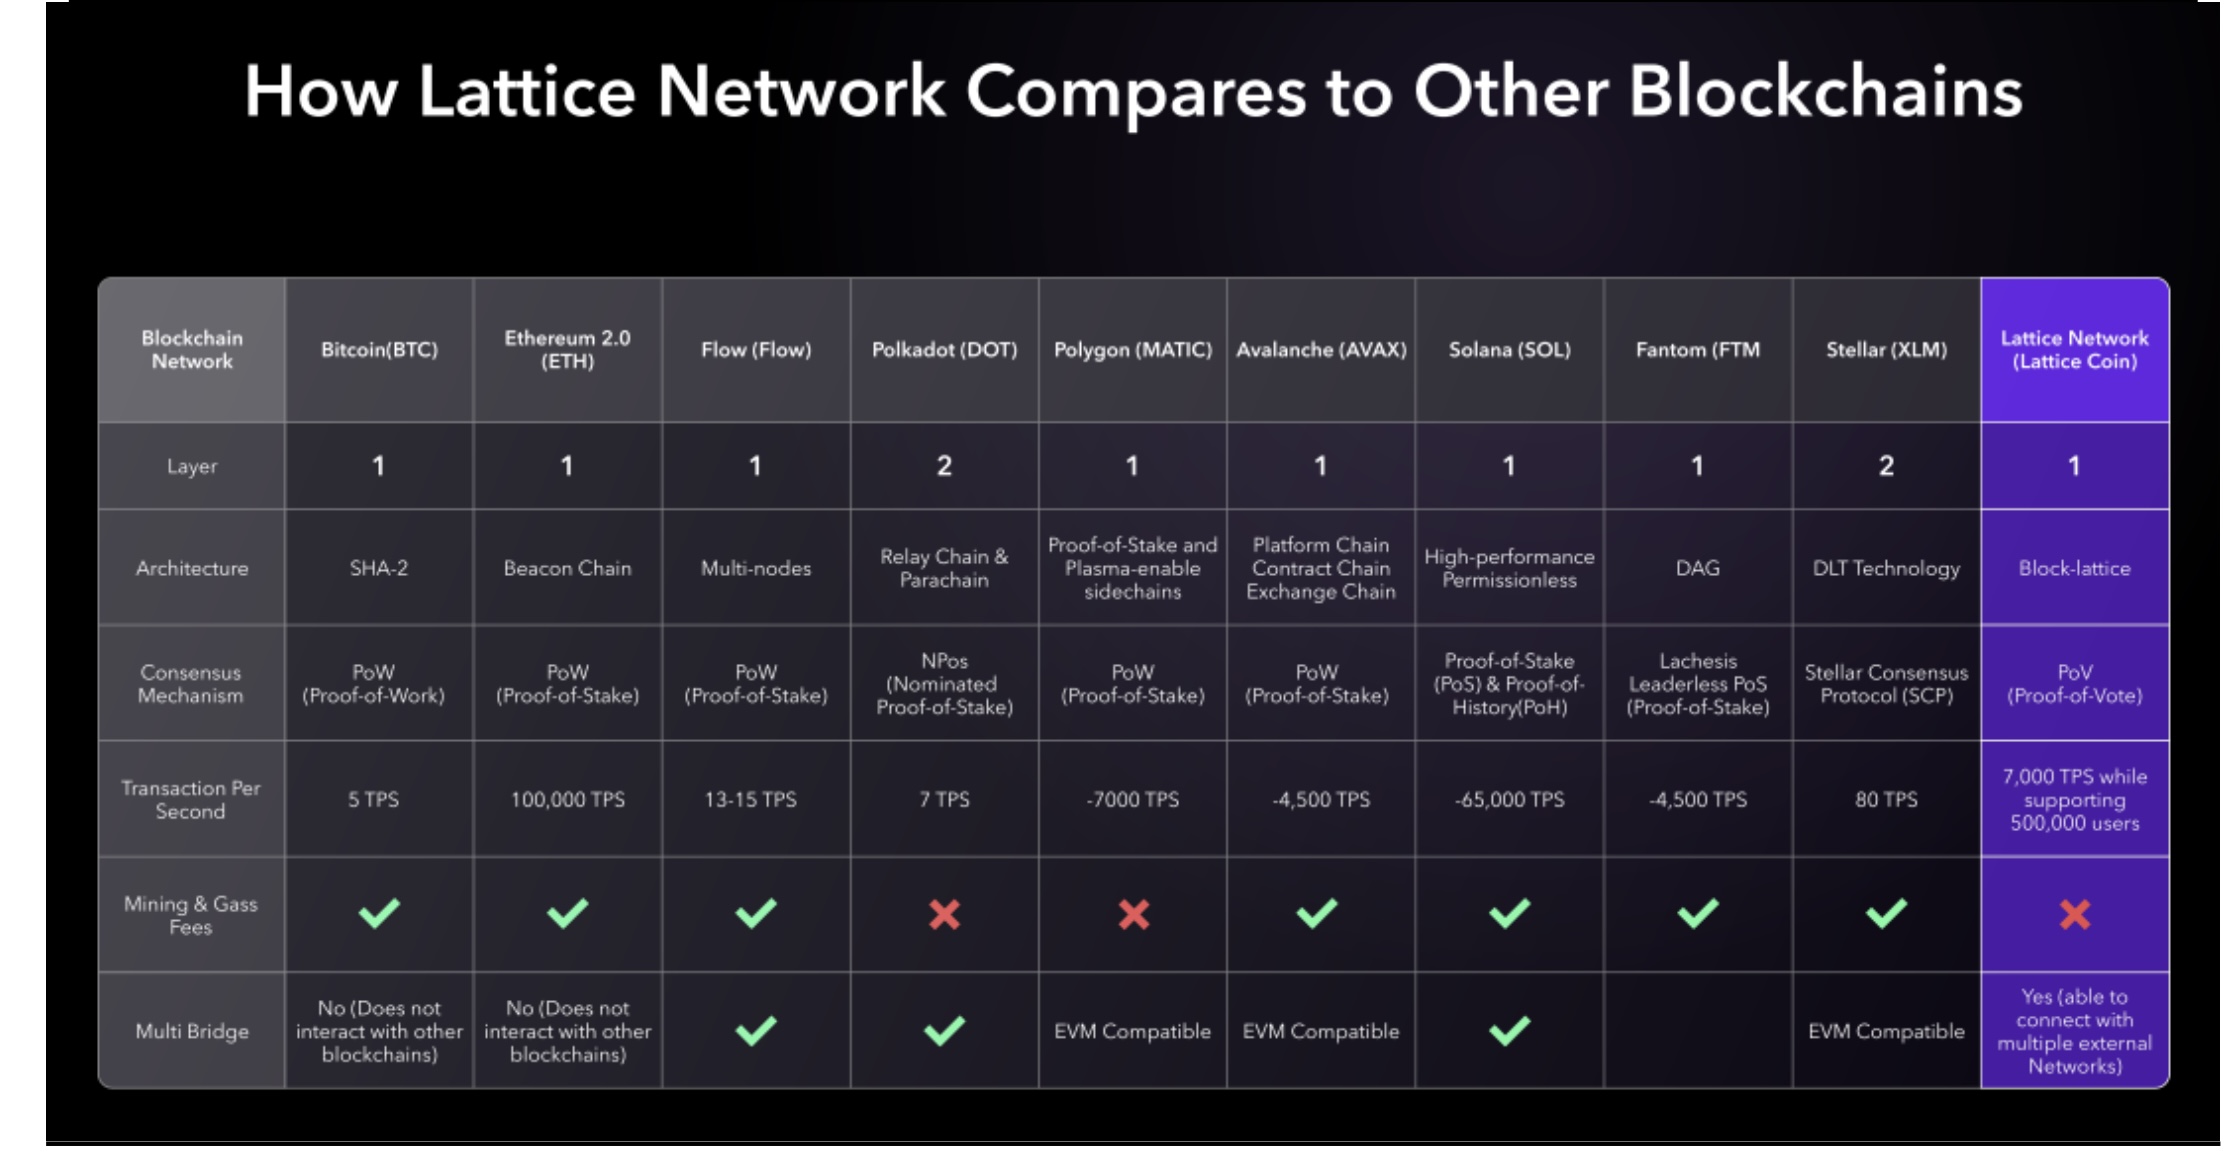 Lattice Network Comparison